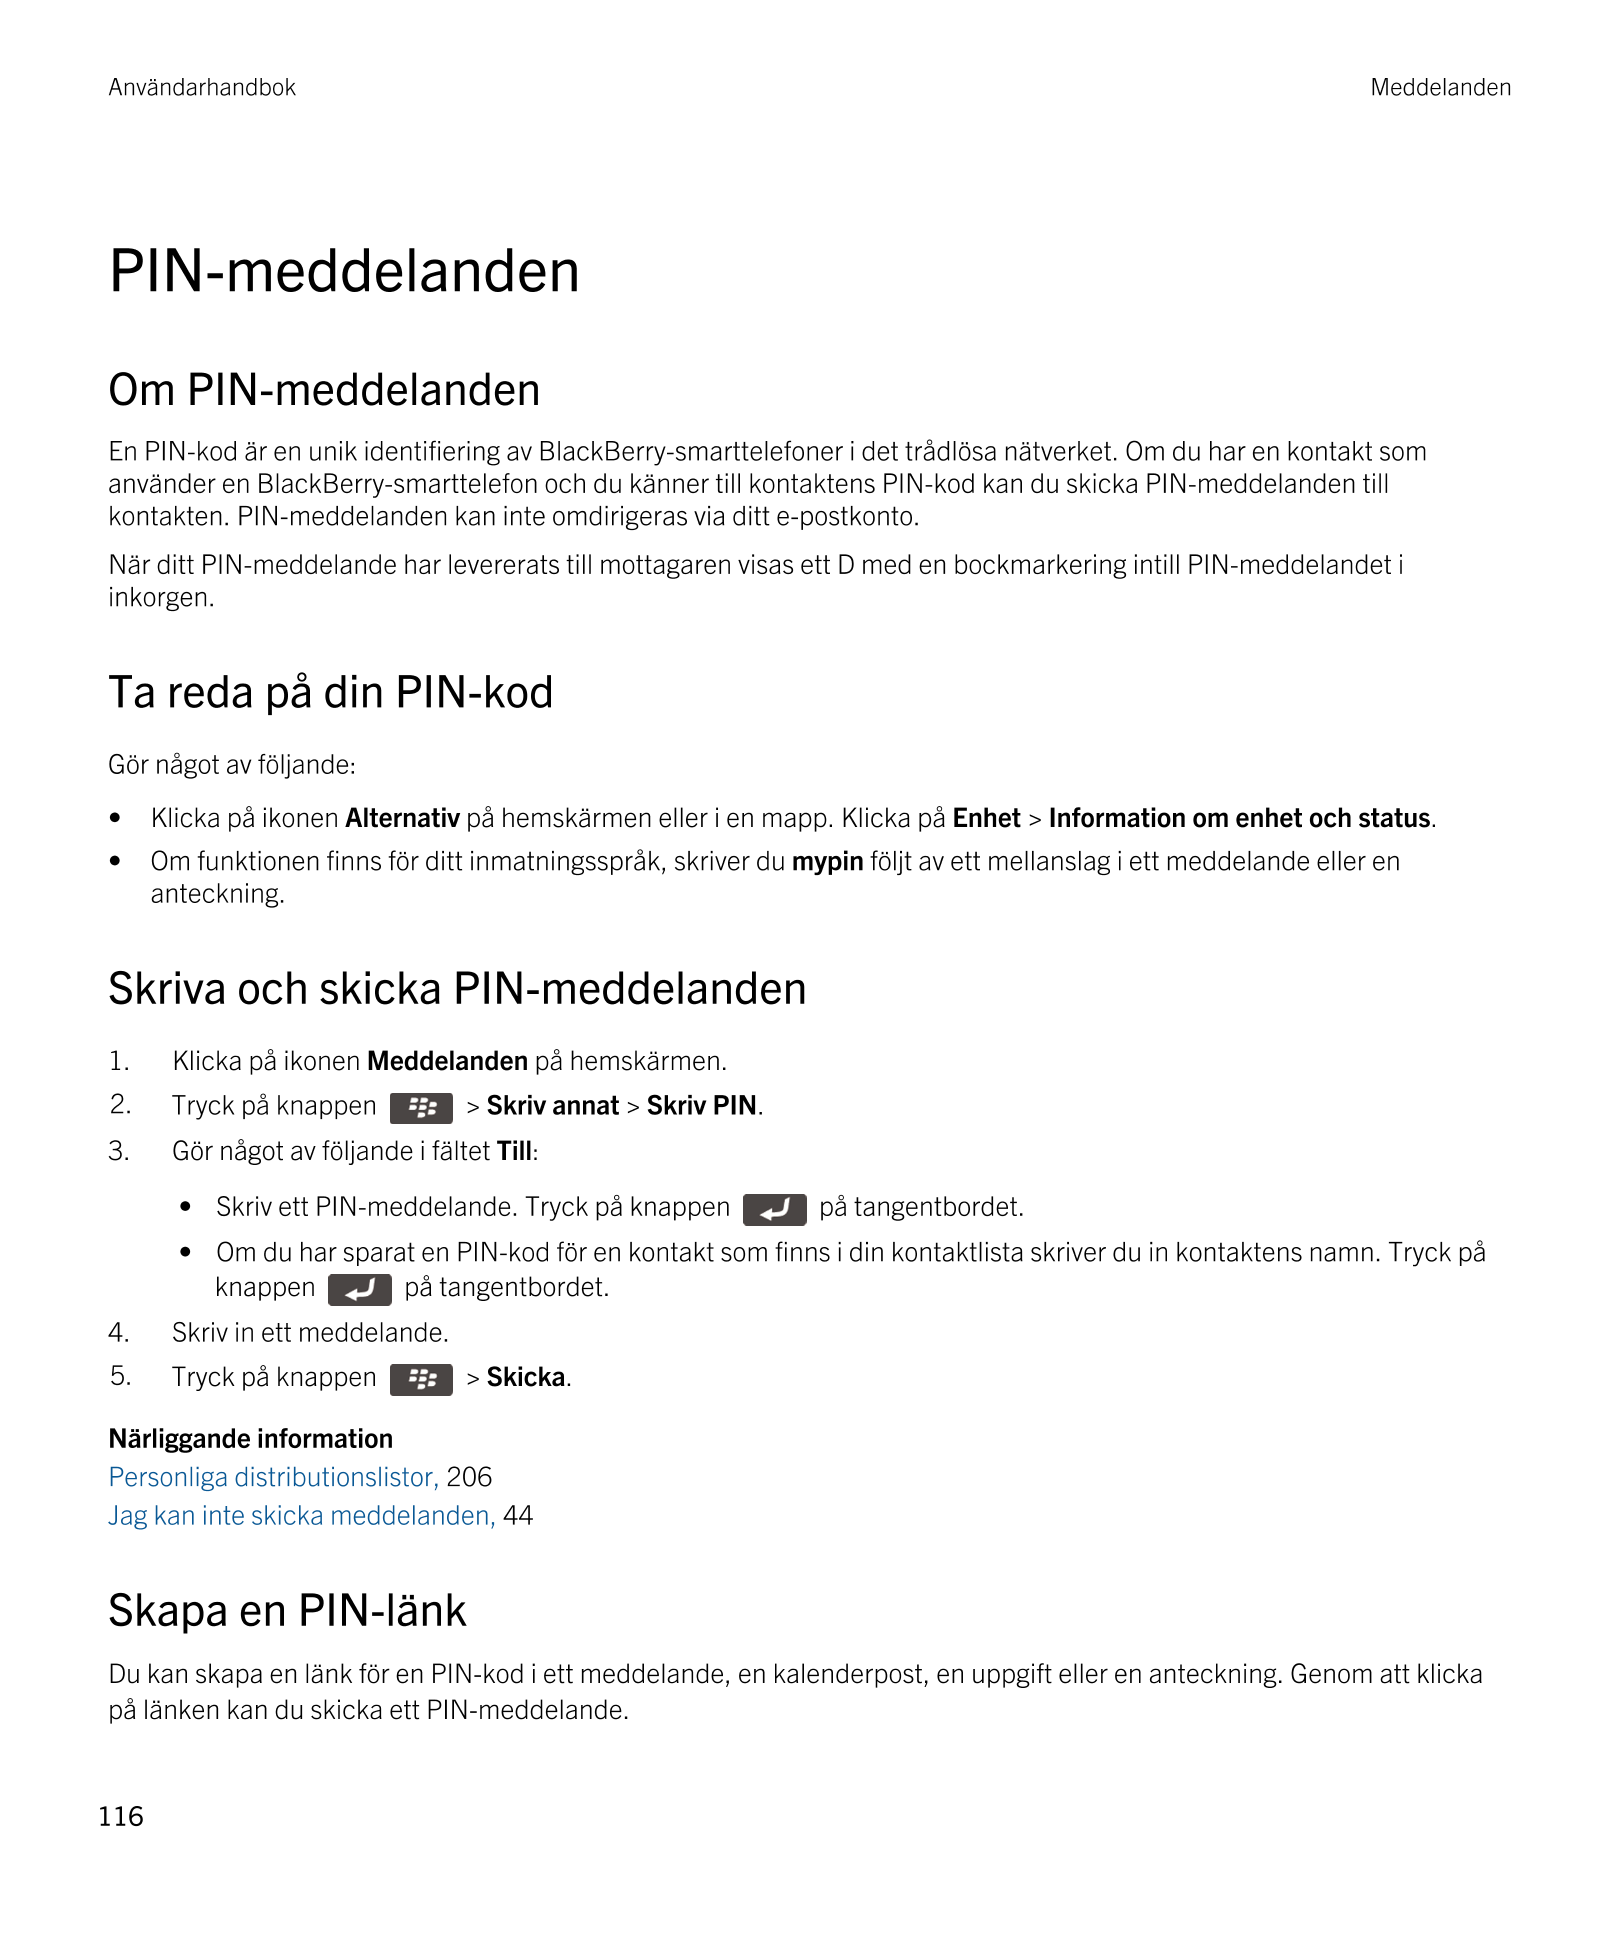 Användarhandbok Meddelanden
PIN-meddelanden
Om PIN-meddelanden
En PIN-kod är en unik identifiering av  BlackBerry-smarttelefoner